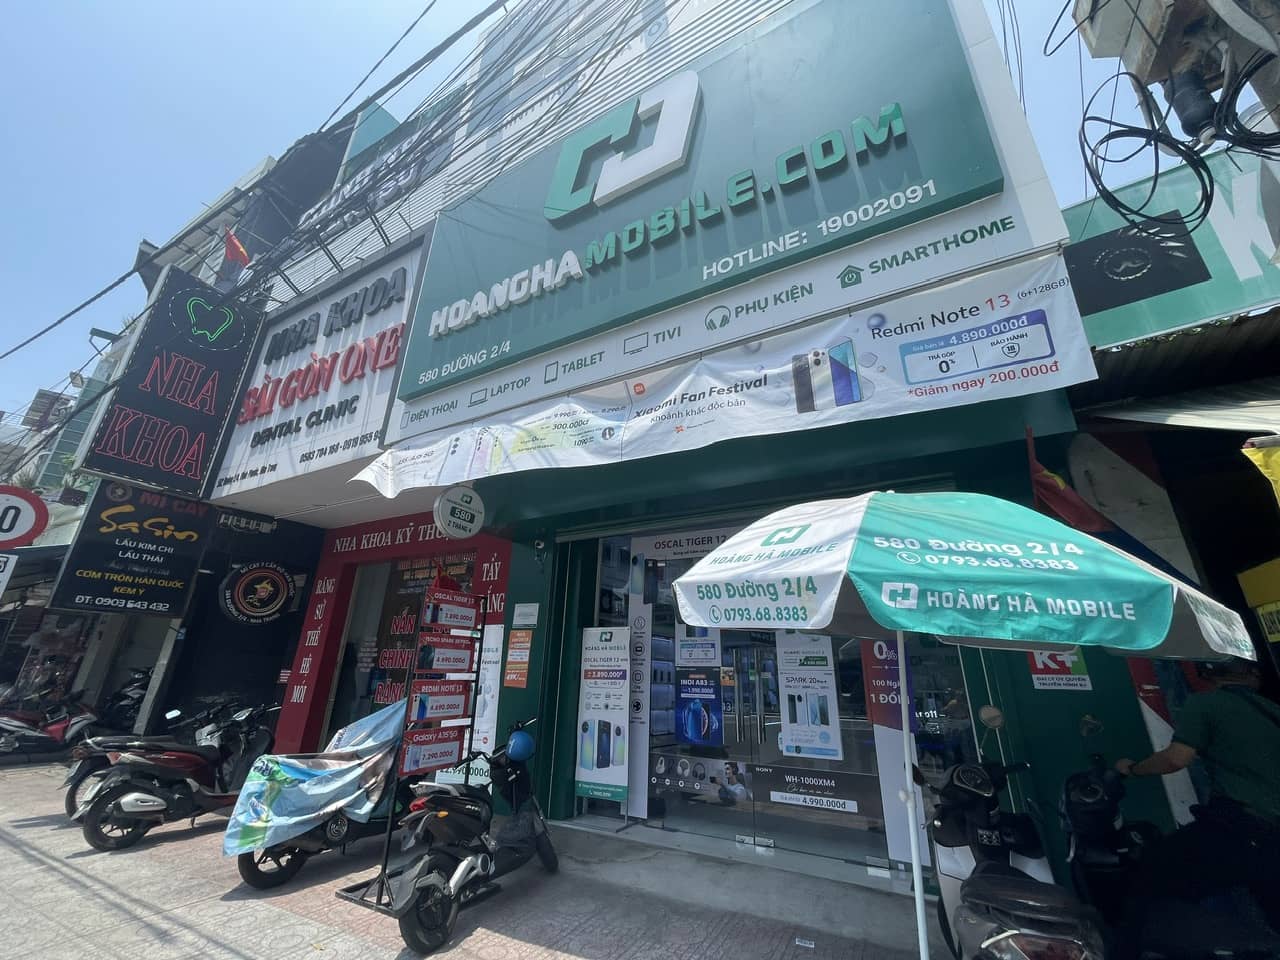 Cửa hàng điện thoại Hoàng Hà Mobile chi nhánh Nha Trang vừa bị cướp. Ảnh: Hữu Long